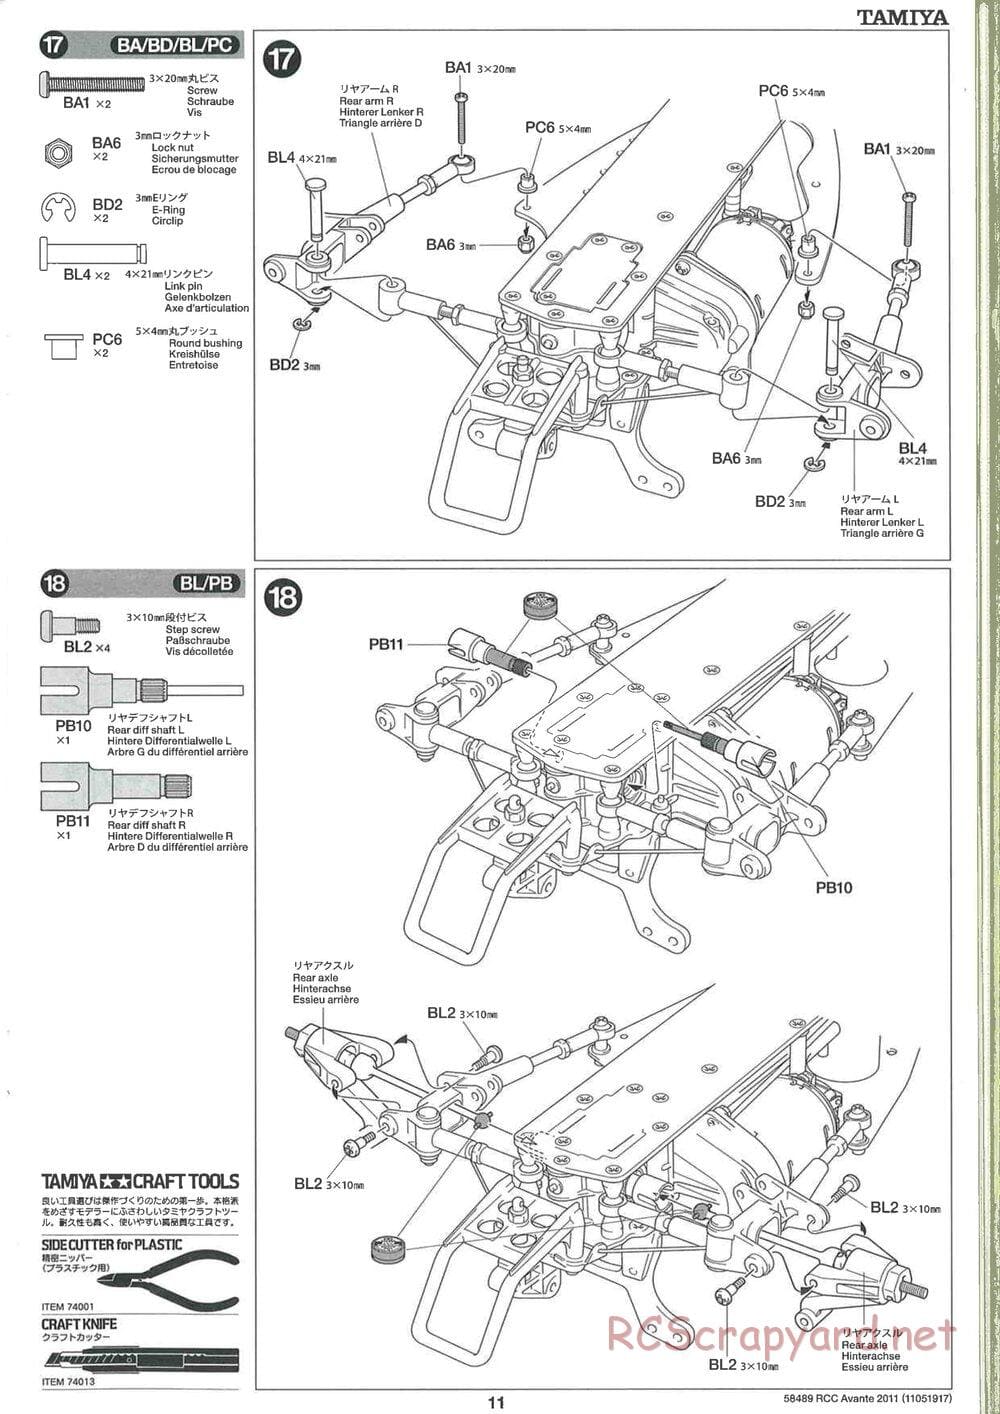 Tamiya - Avante 2011 - AV Chassis - Manual - Page 11